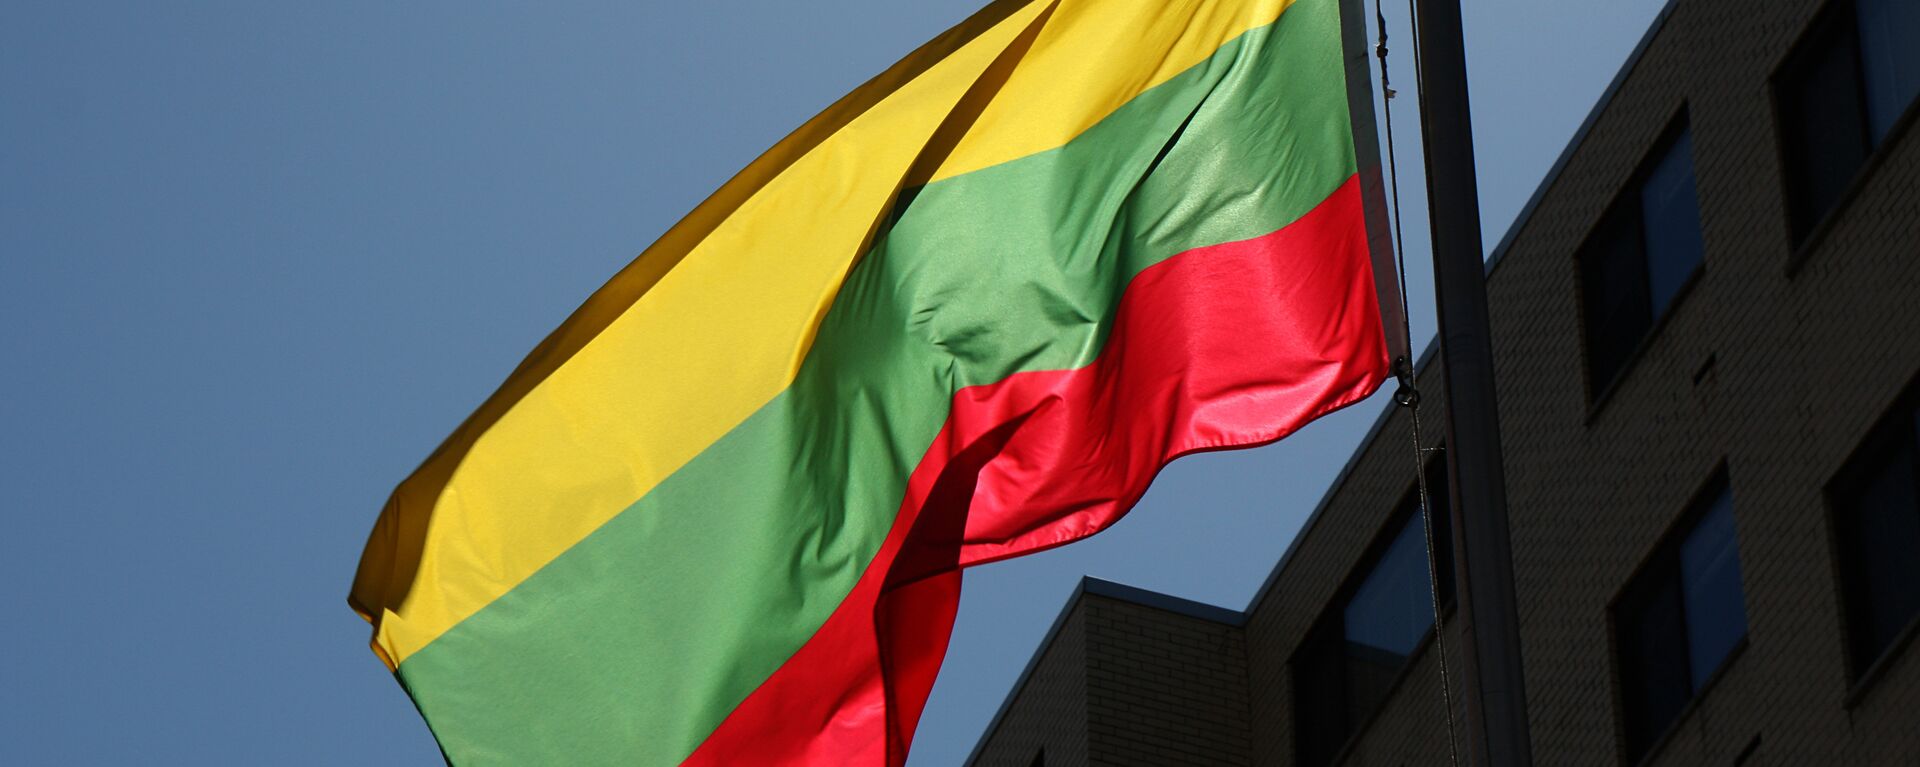 Bandera de Lituania - Sputnik Mundo, 1920, 16.06.2021